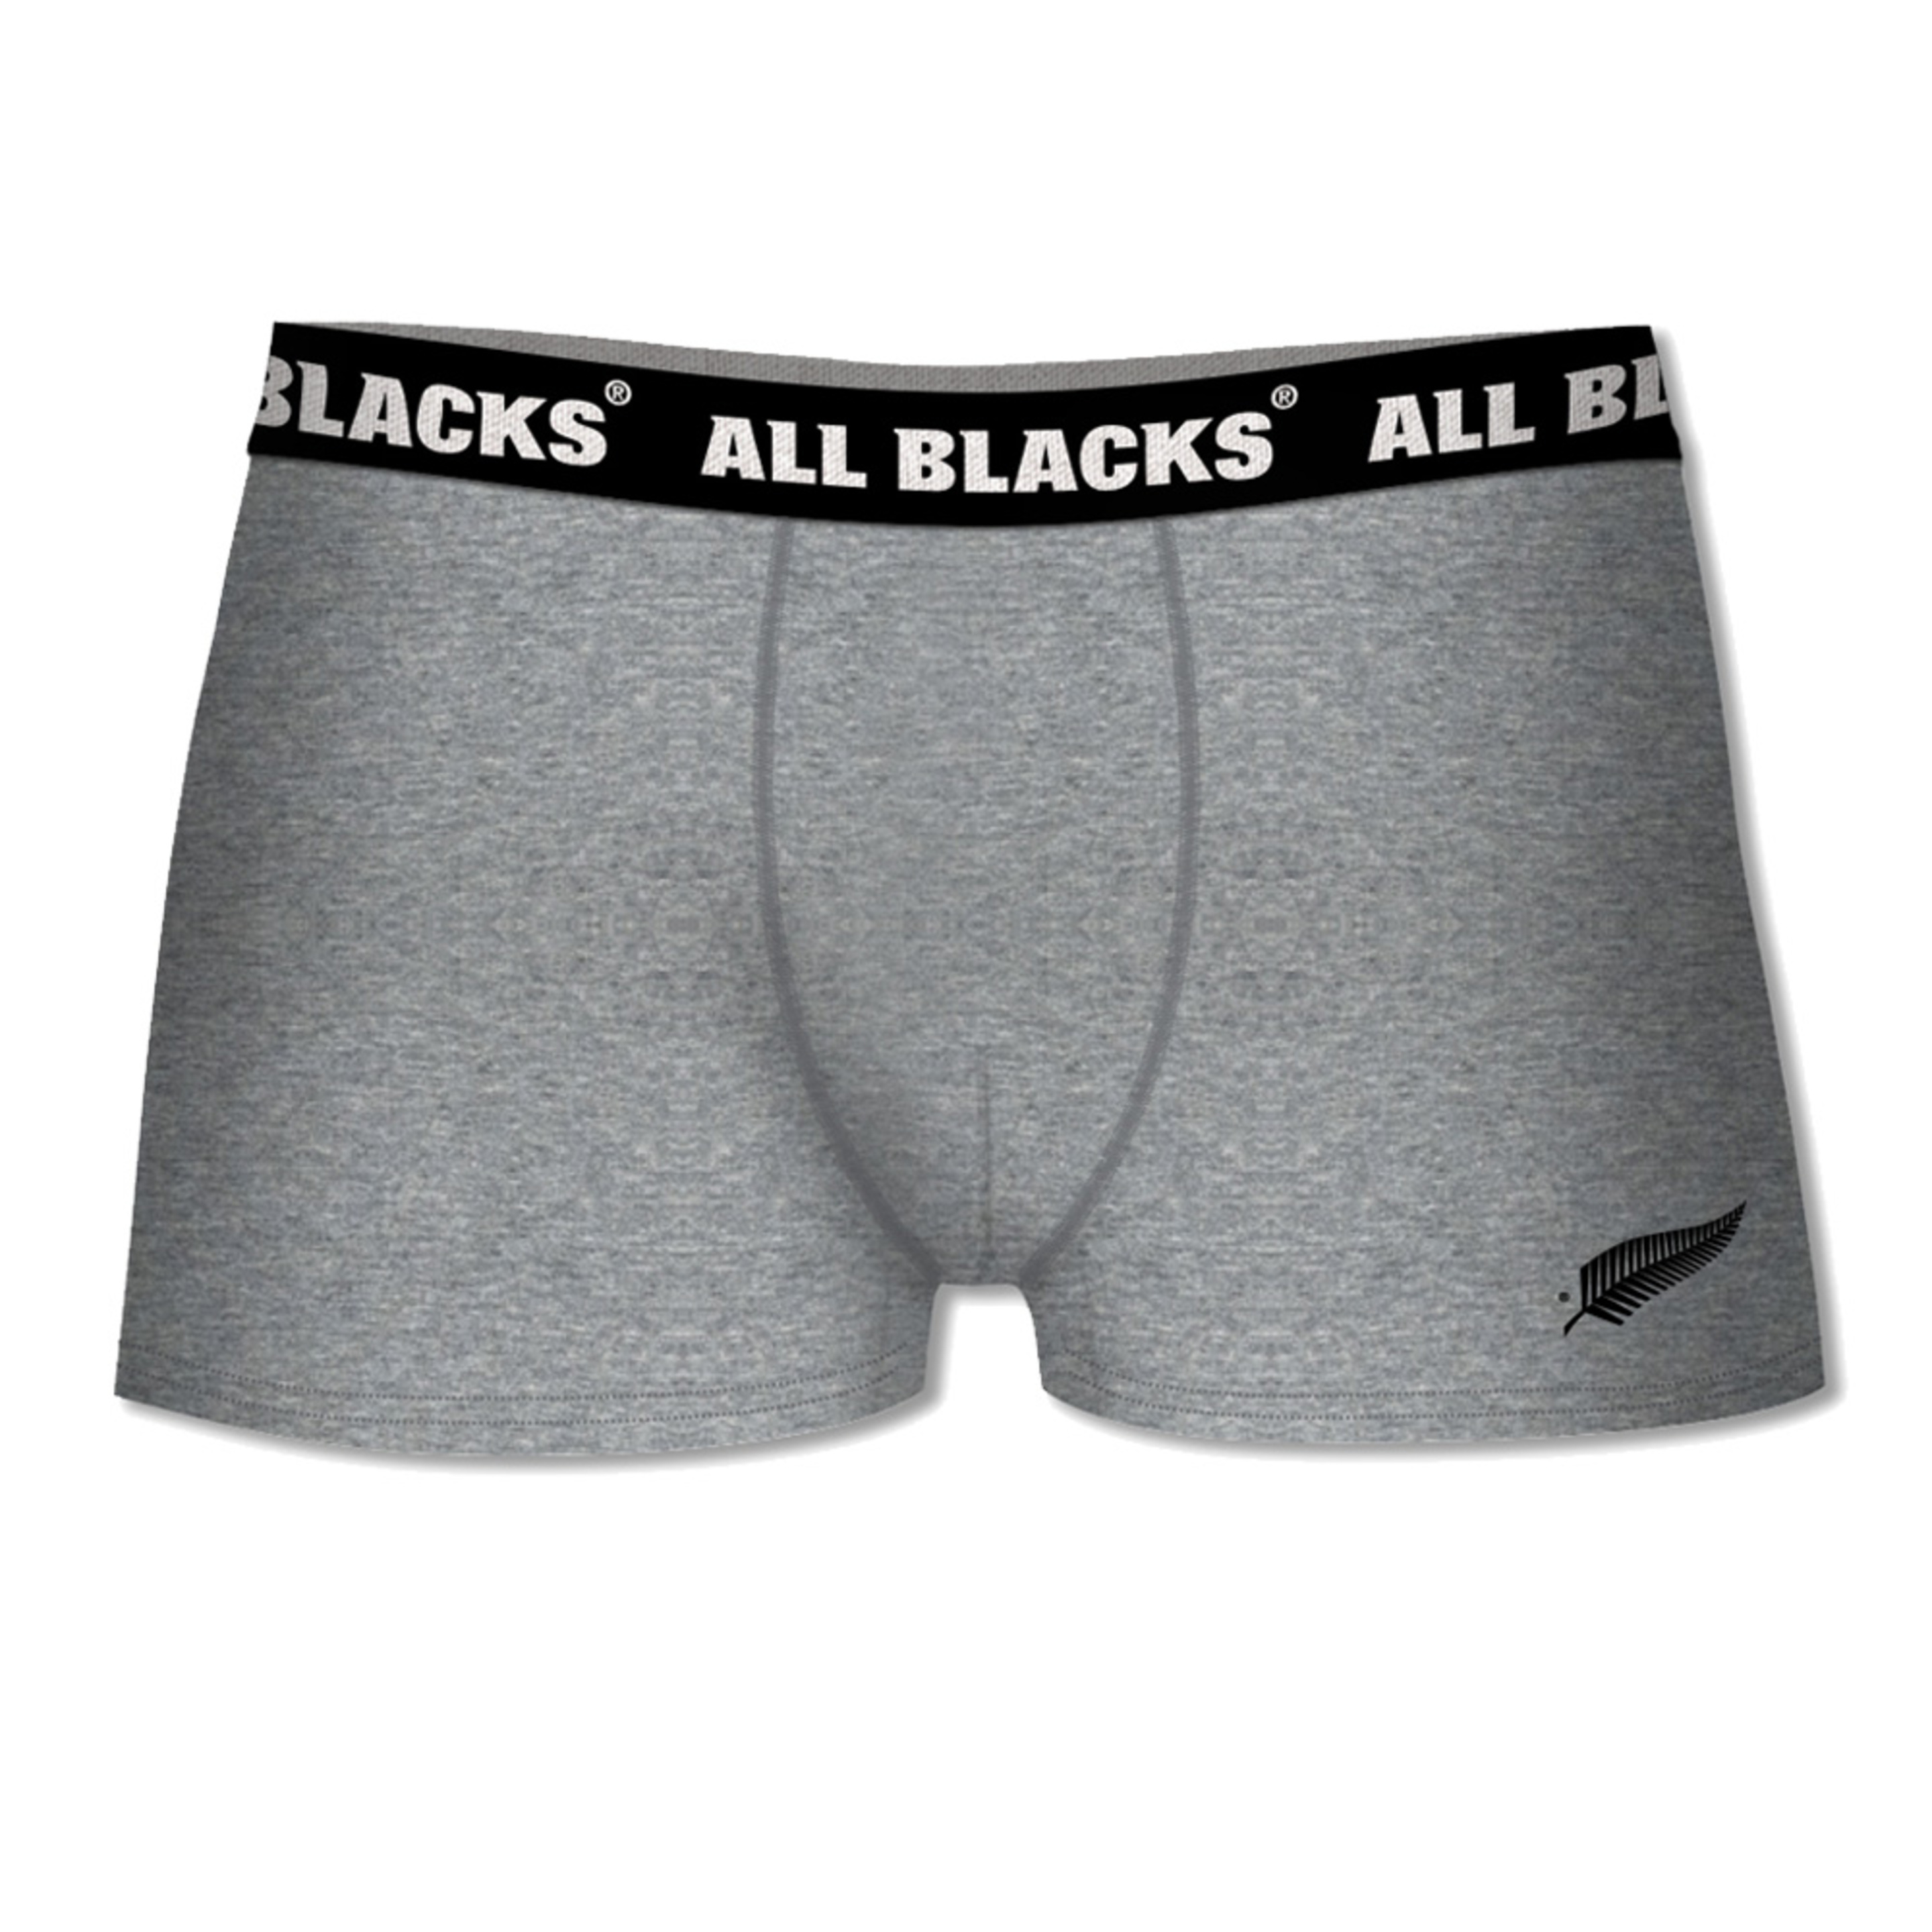 Calzoncillos All Blacks - gris-claro - 